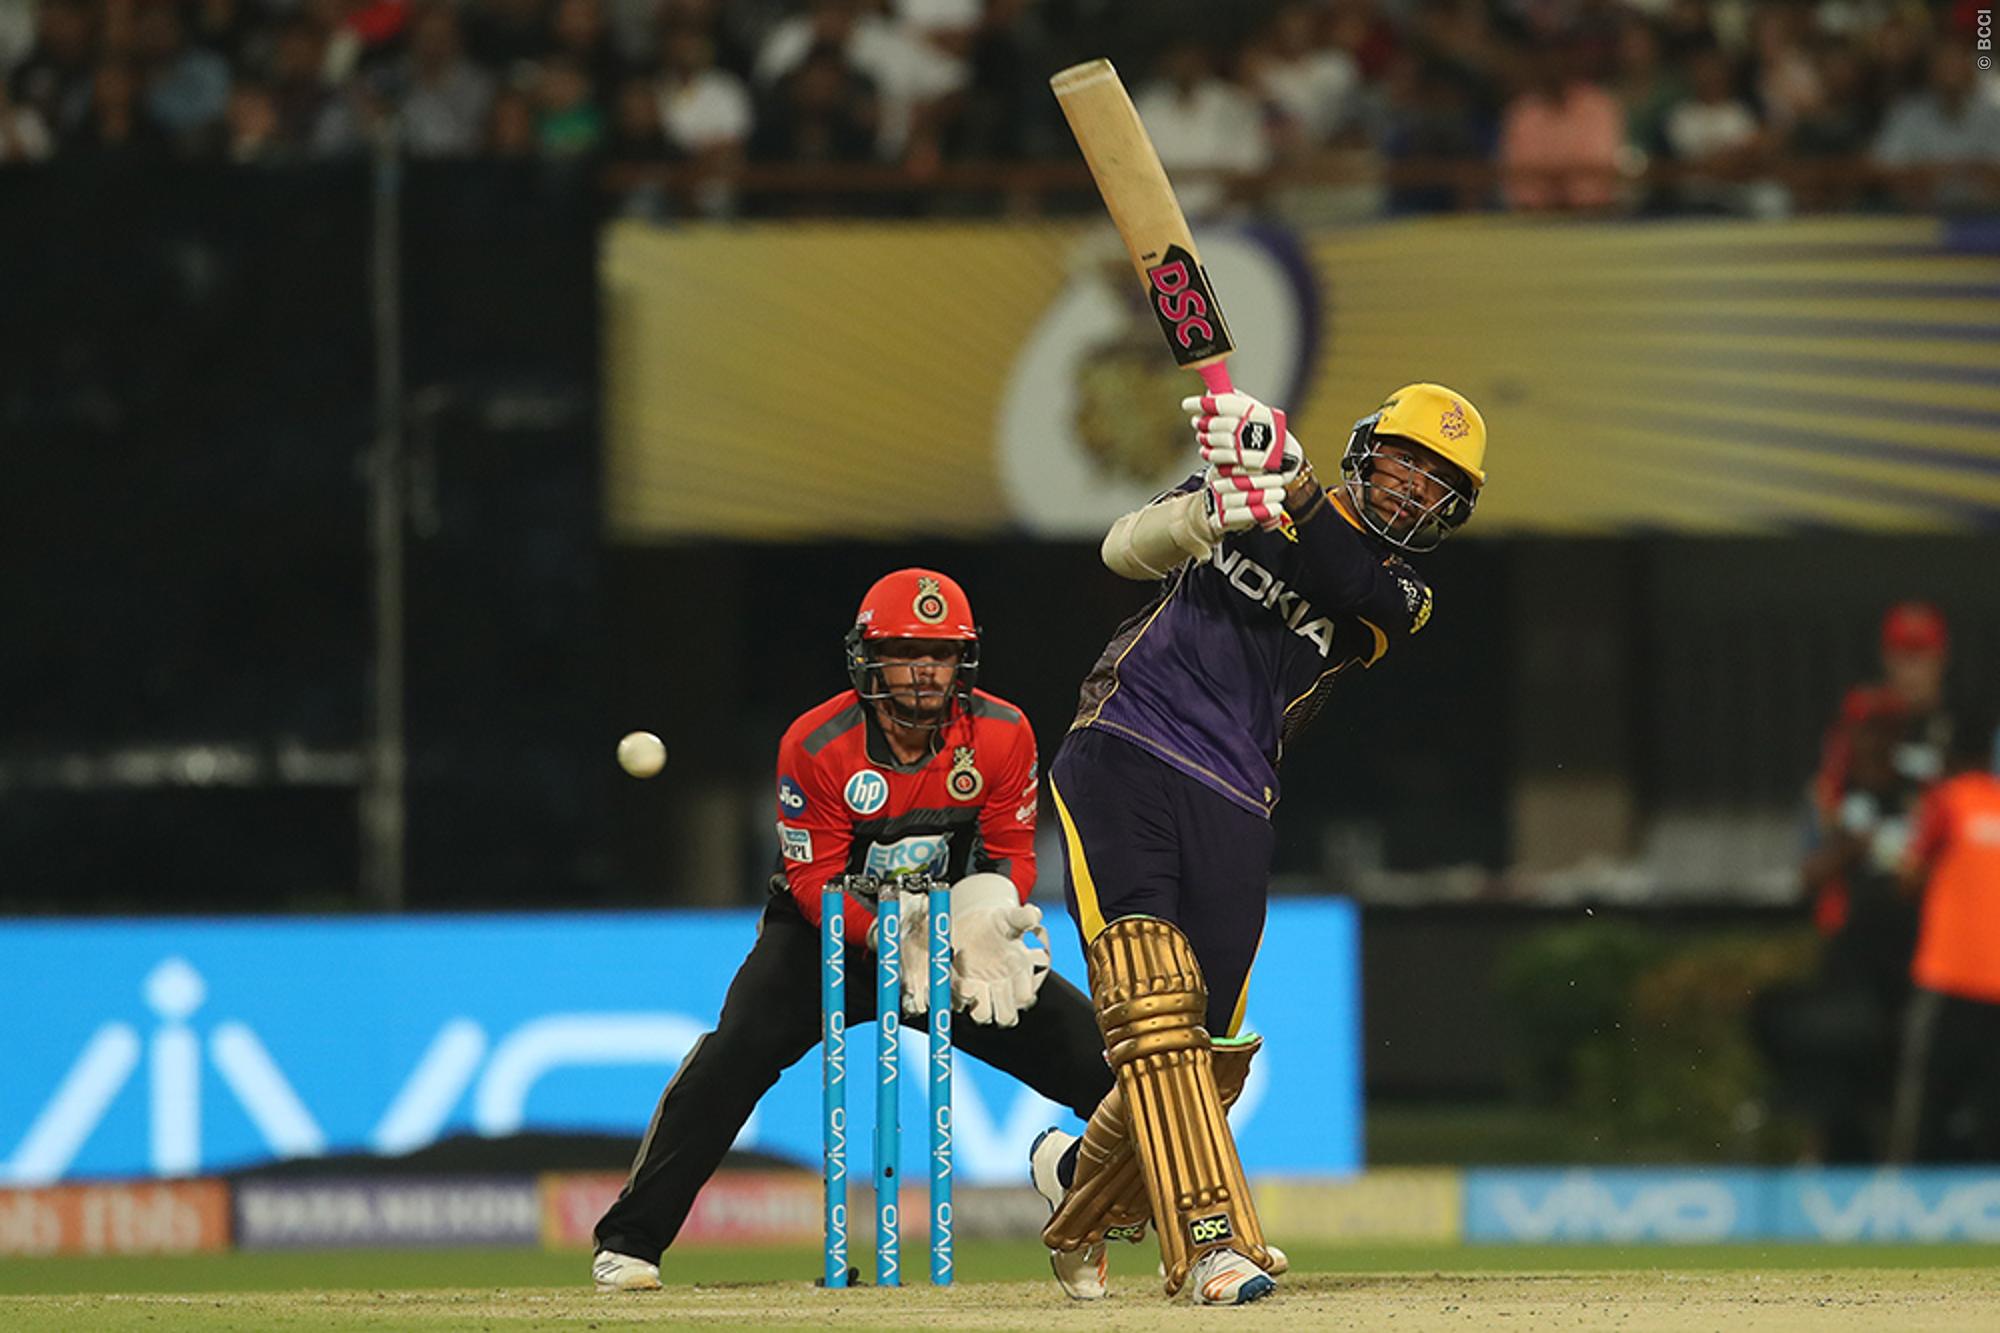 IPL 2018 | Sunil Narine’s 16-ball fifty secures Kolkata Knight Riders a winning start